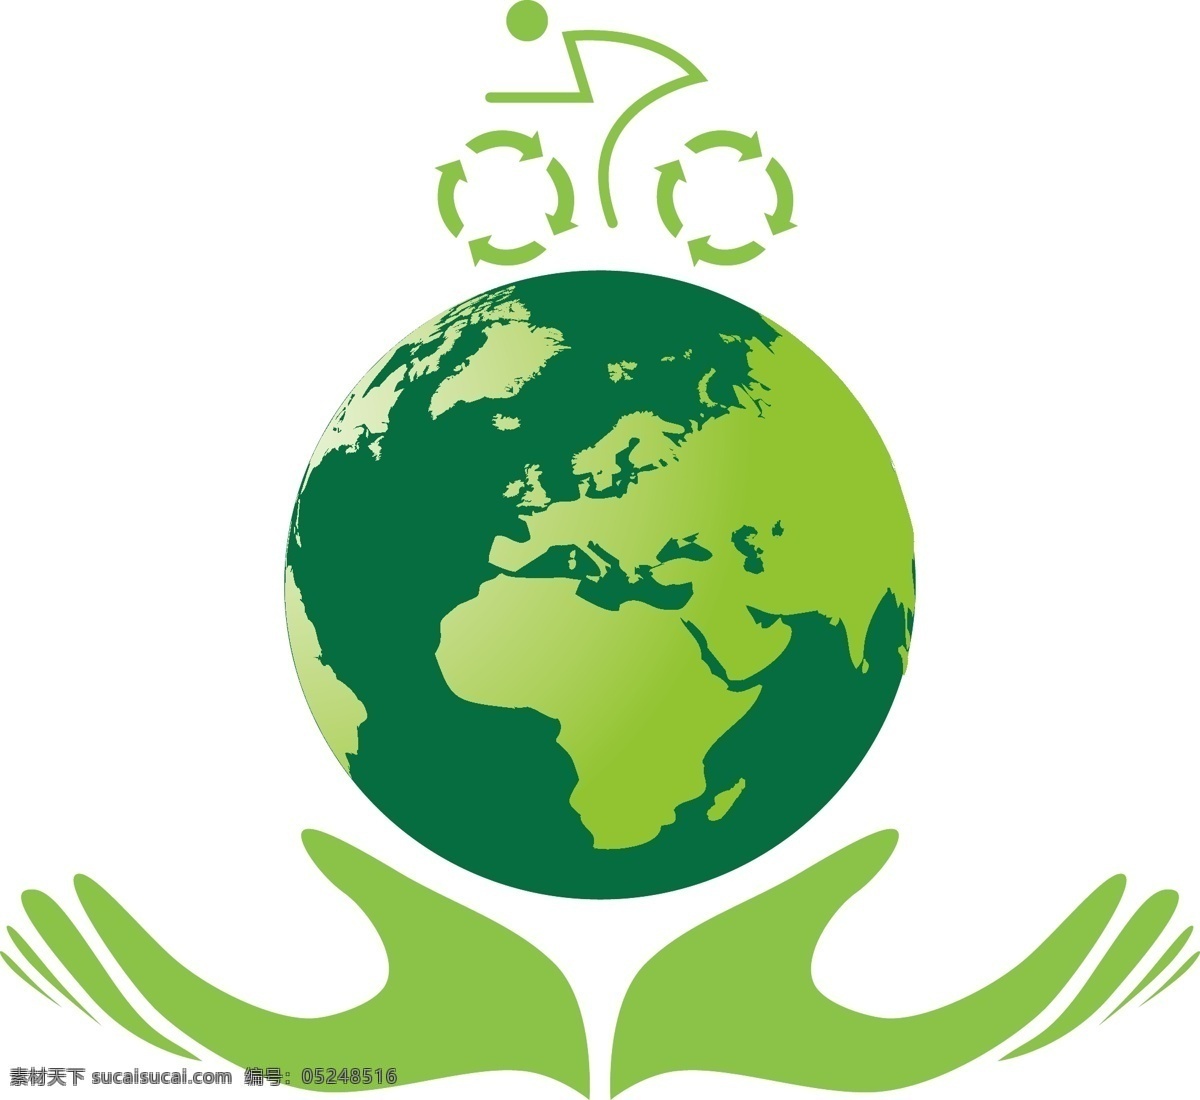 绿色环保 保护 地球 绿色 出行 图标 自行车 保护地球 环保 能源 循环 运动 交通 环保图标 节能